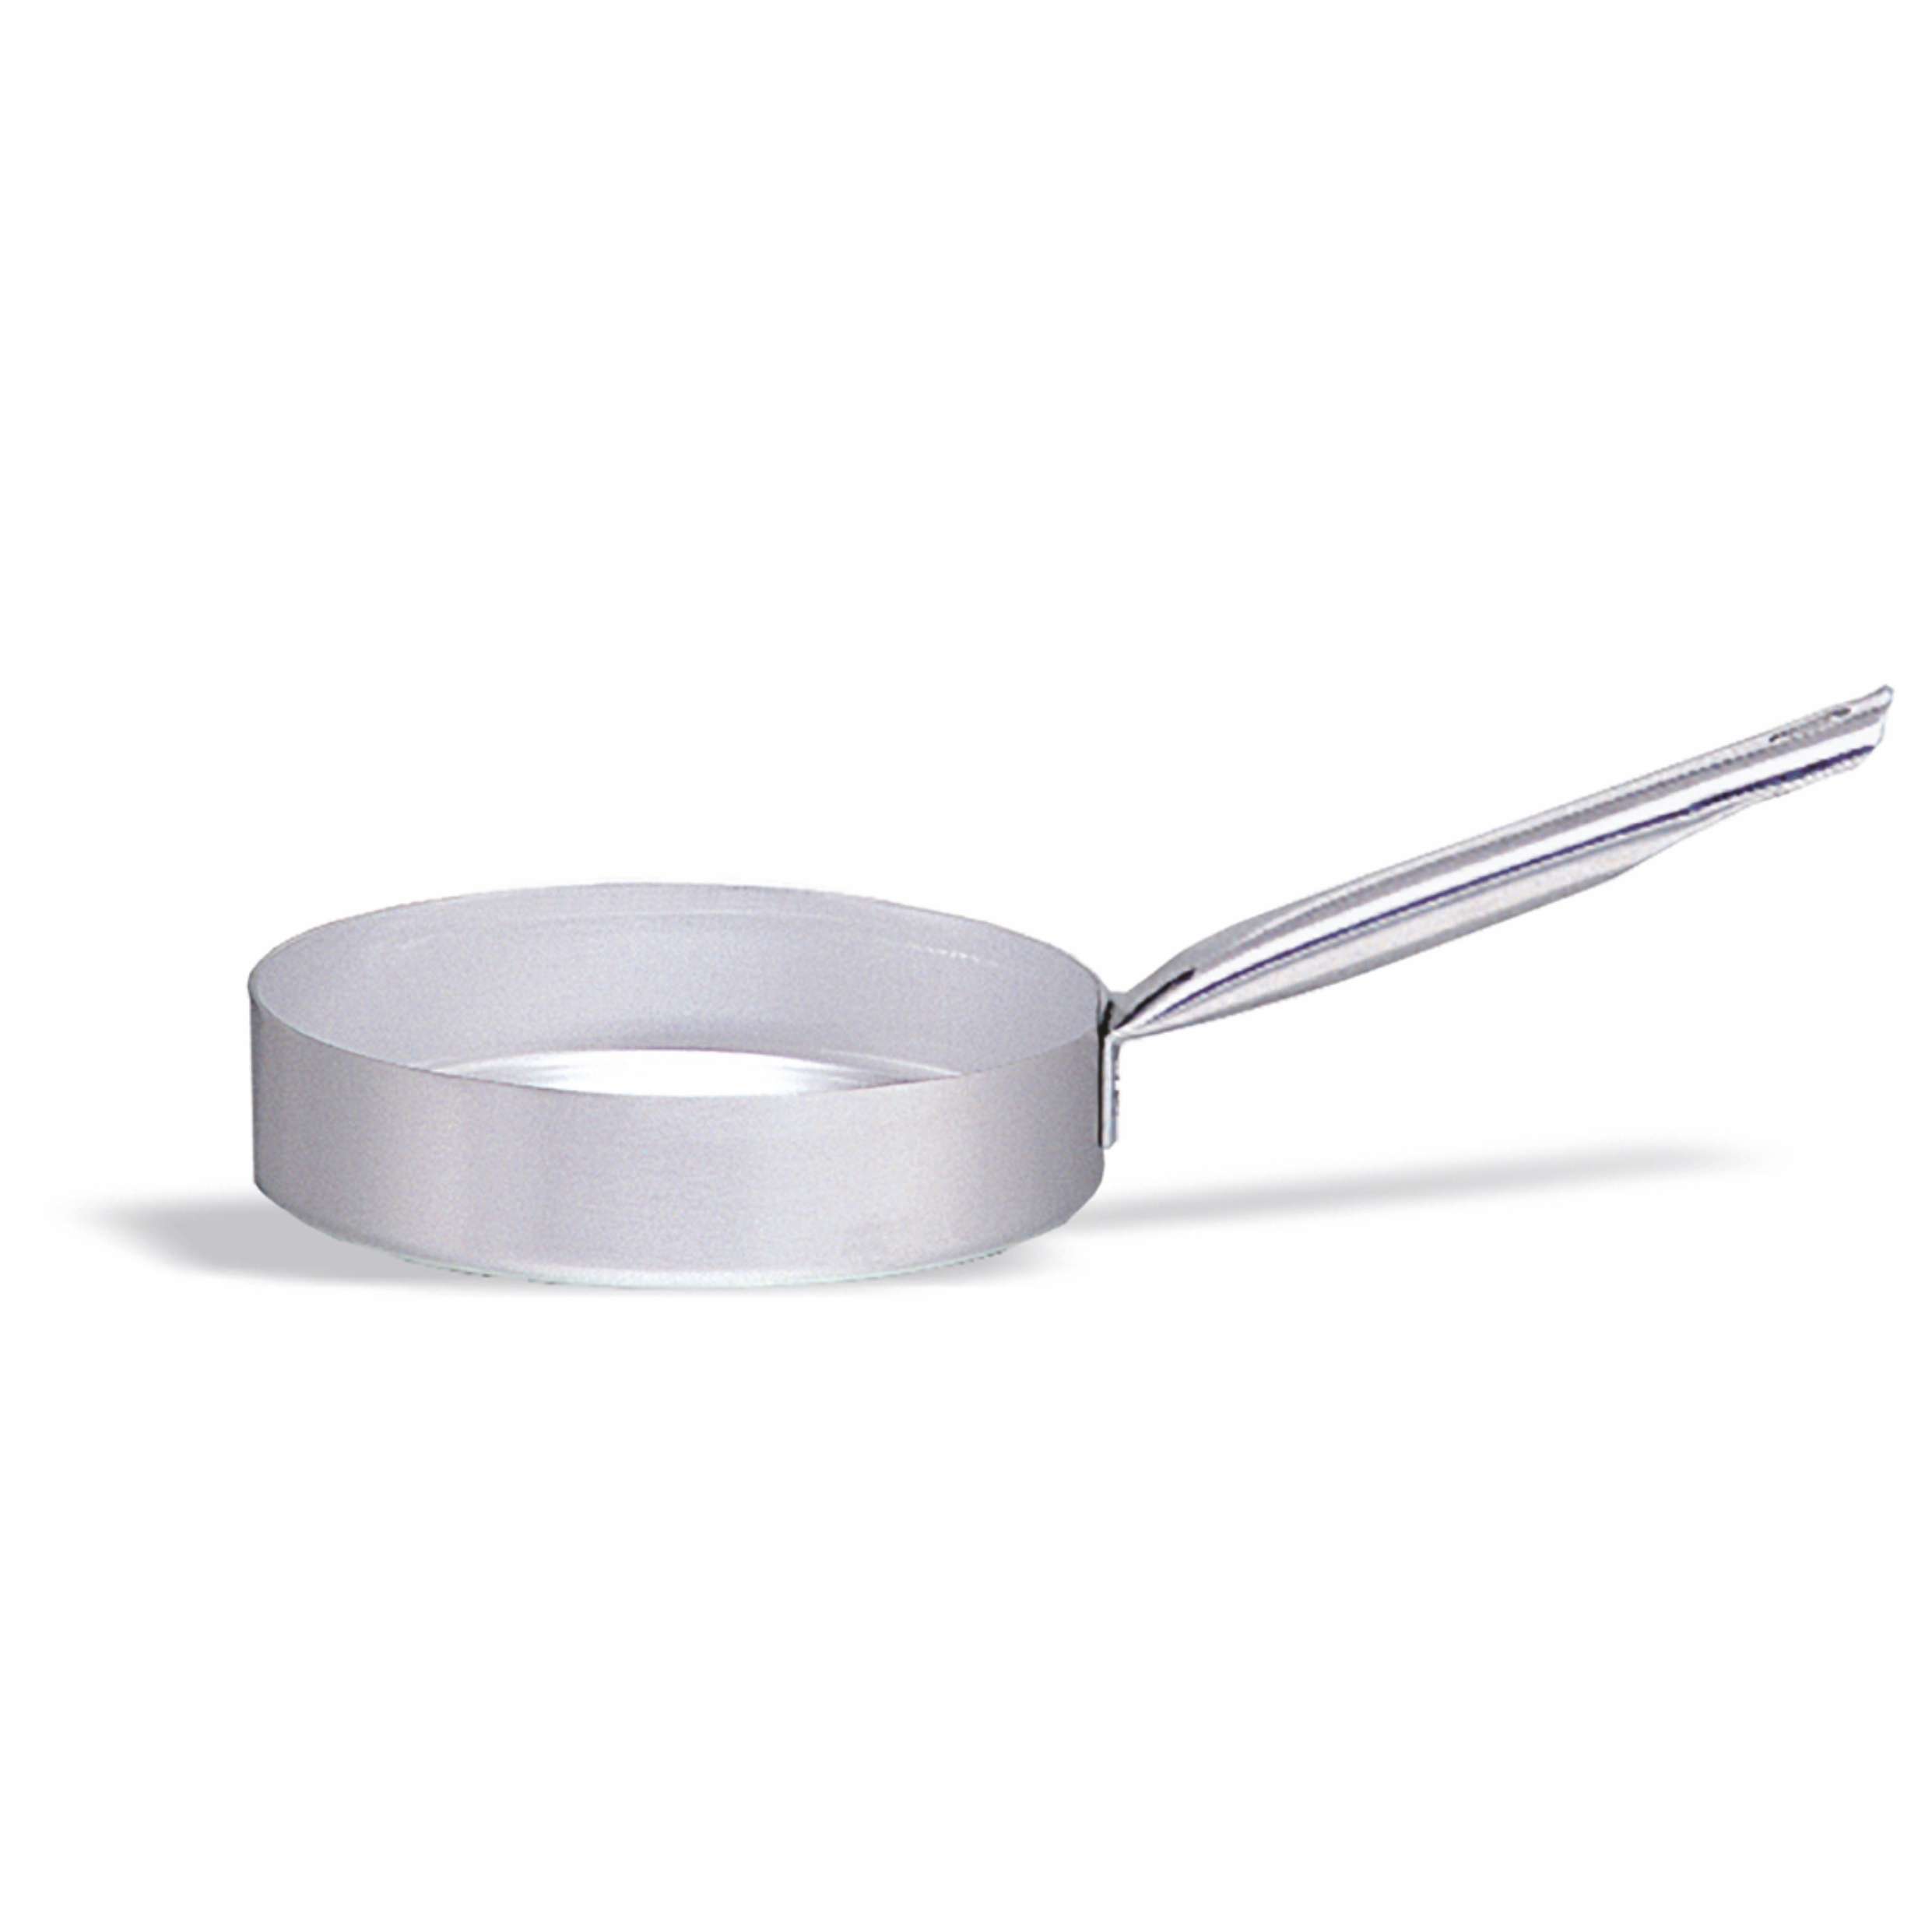 Casseruola in alluminio con manico – diametro 24 cm – 2,75 litri - Borz  Cooking Store